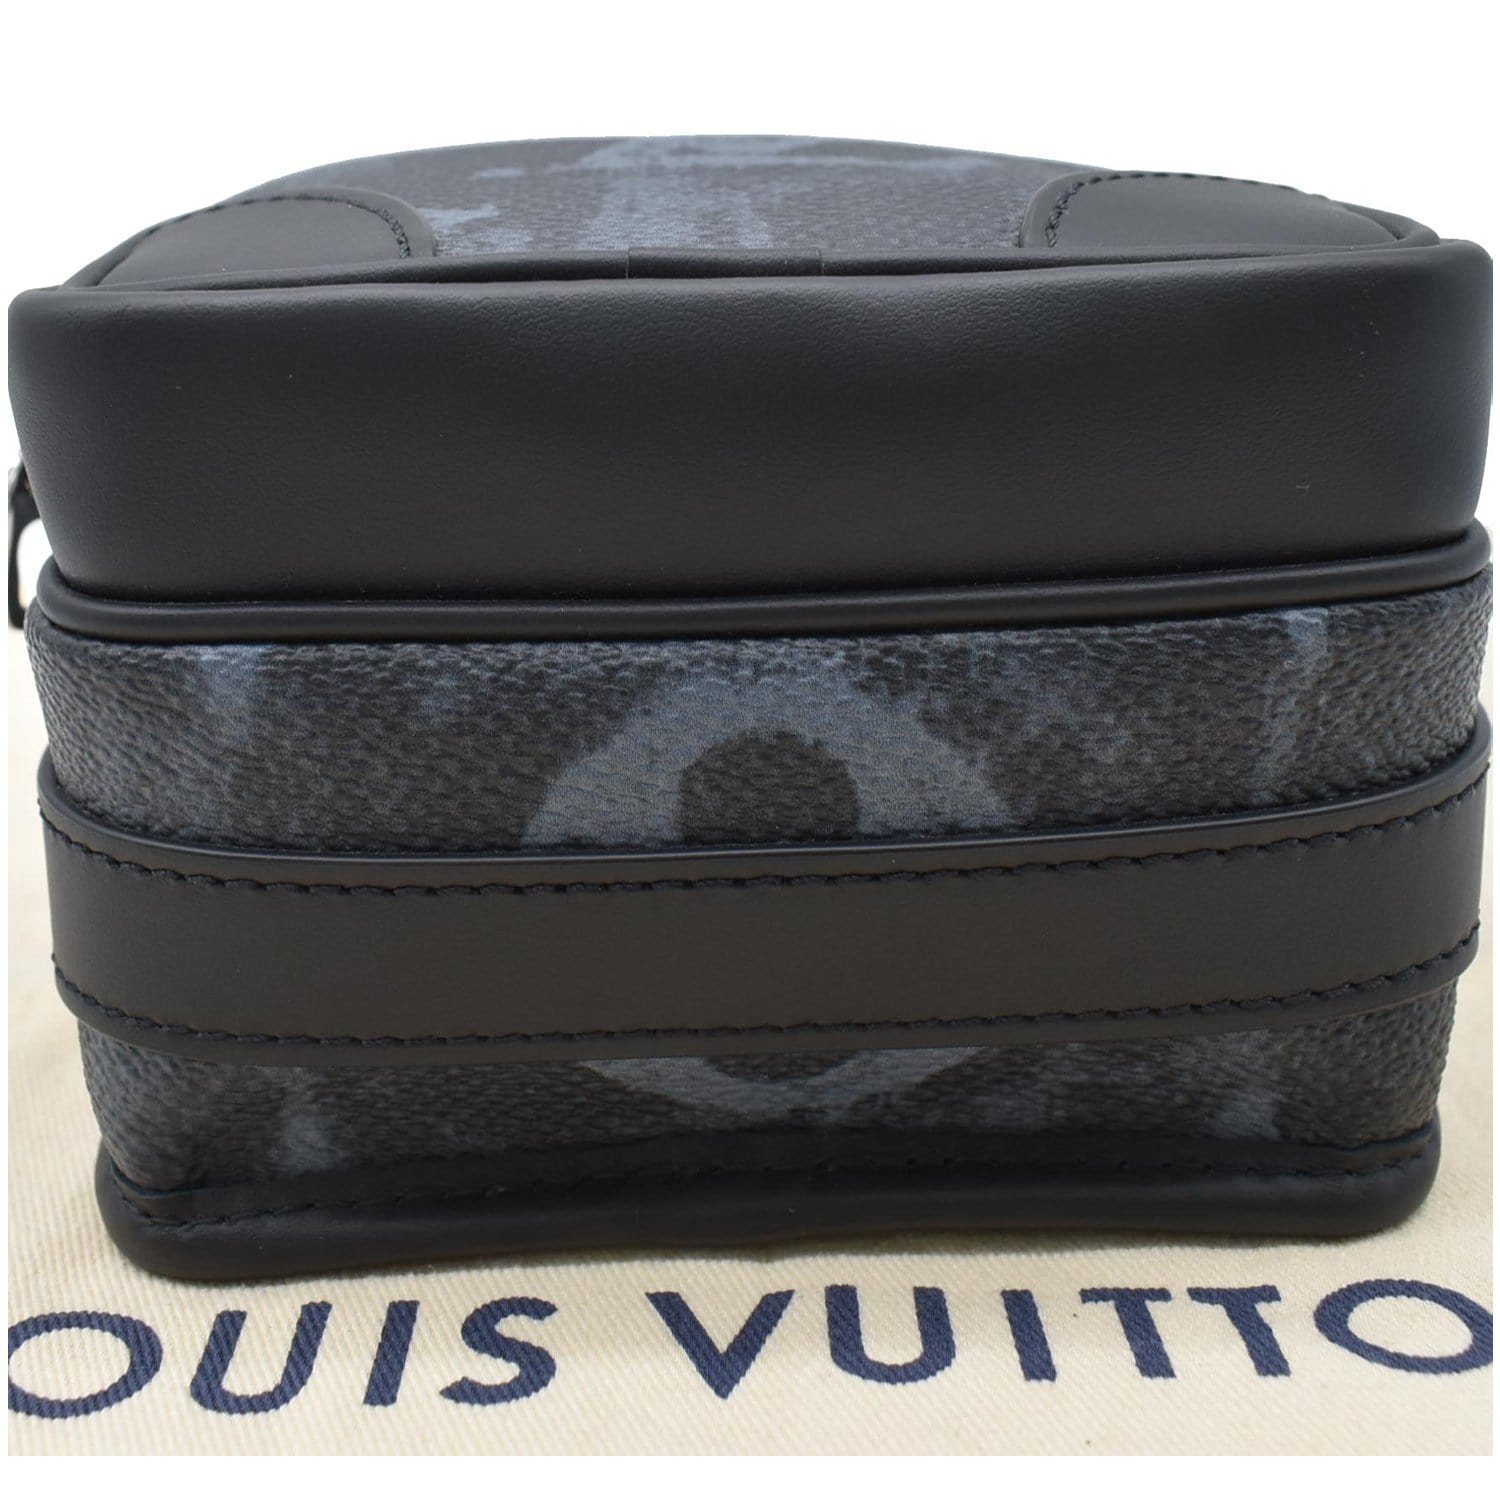 Louis Vuitton Nano e Messenger Bag Review 